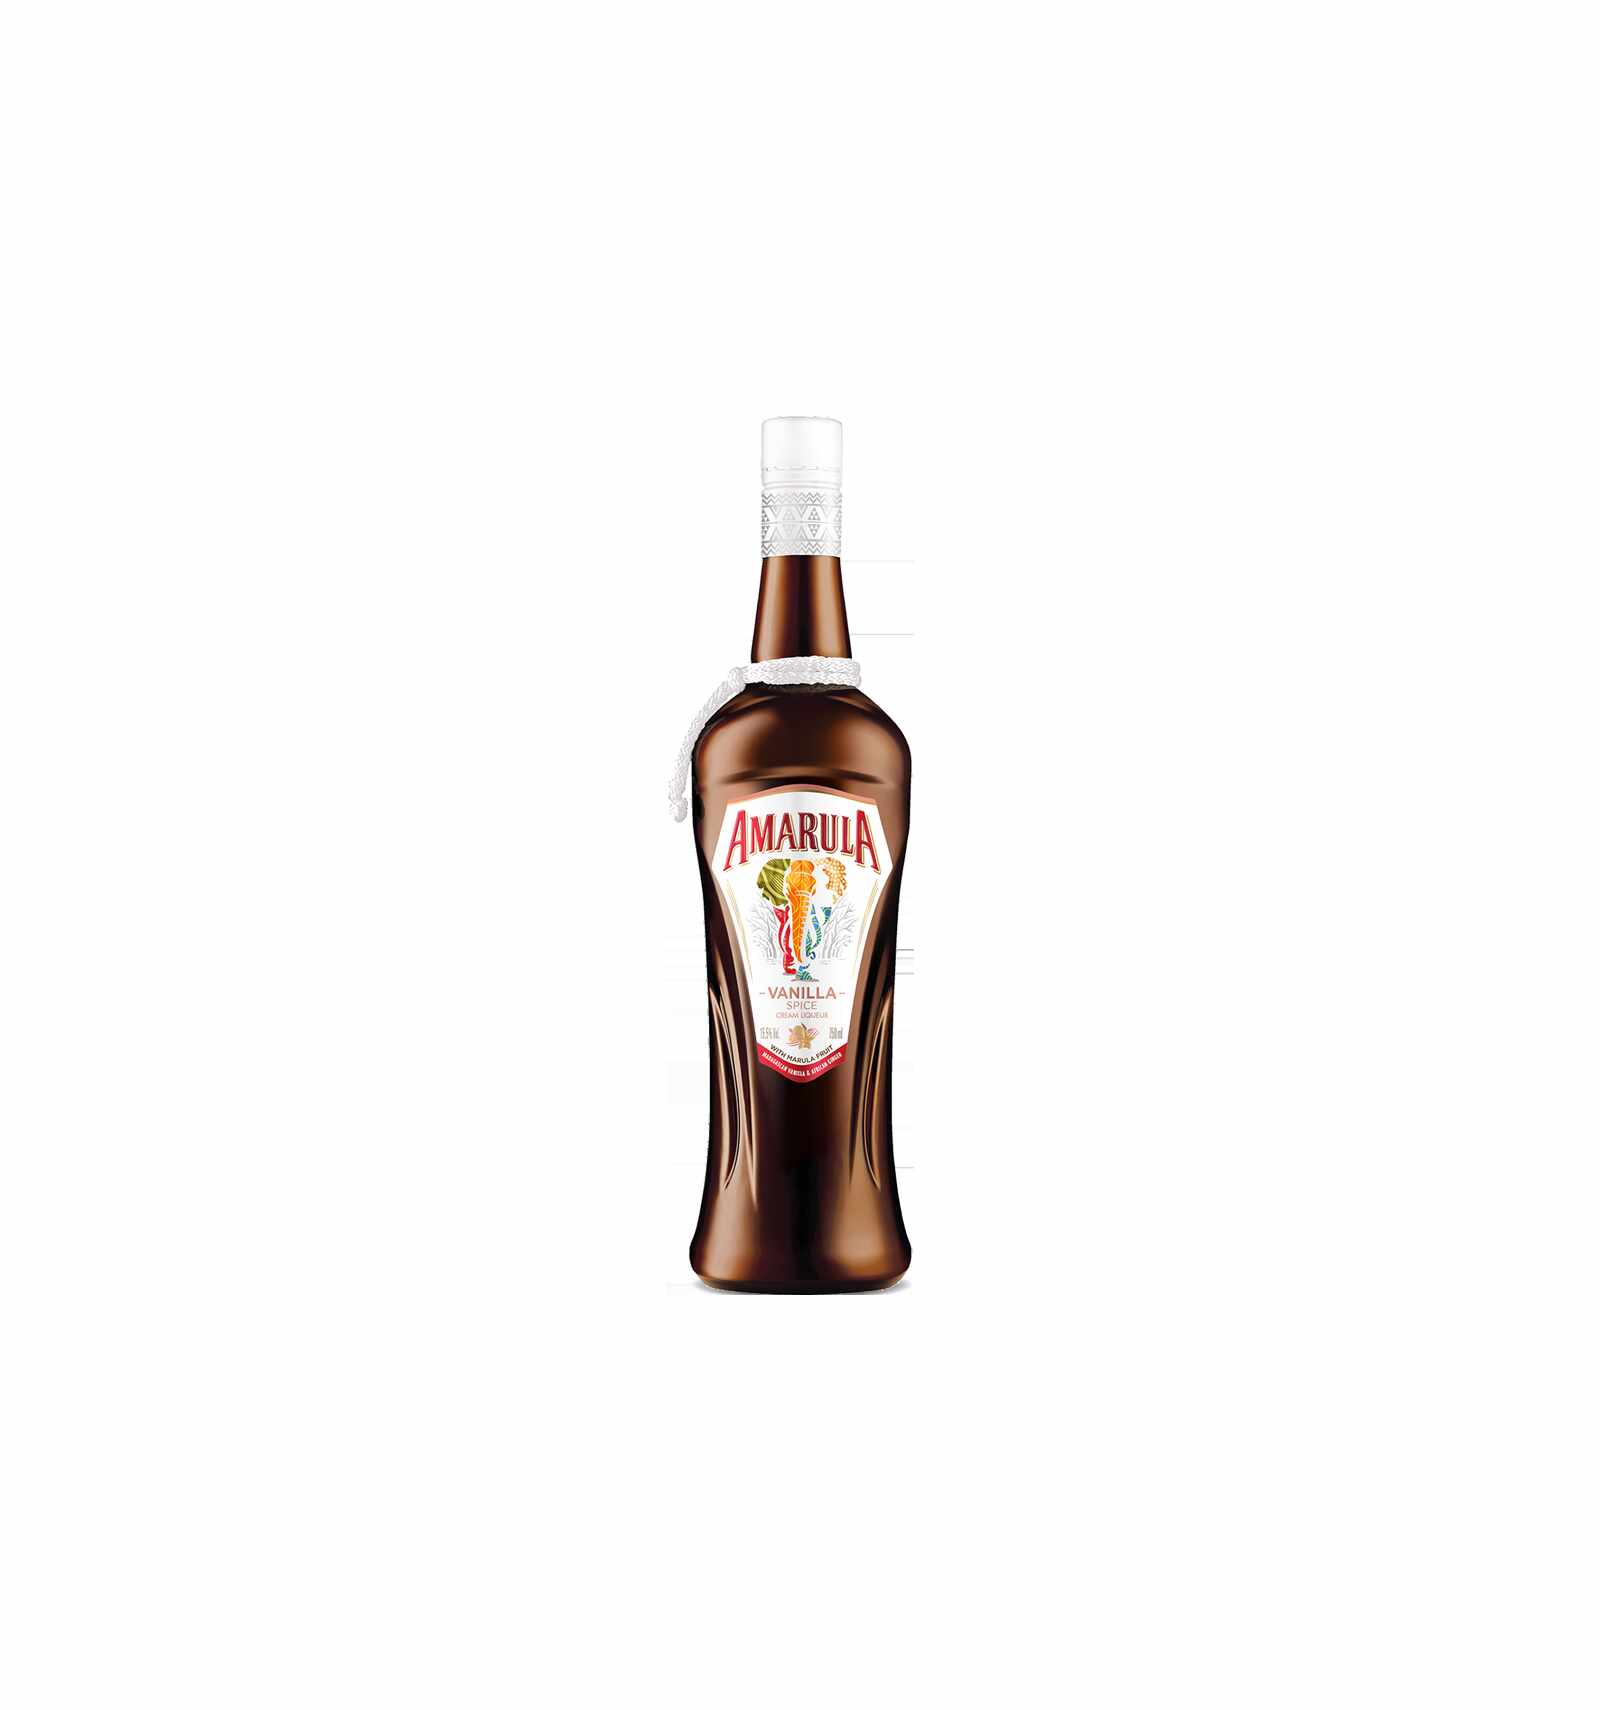 Lichior Amarula Vanilla Spice, 15.5% alc., 0.7L, Africa de Sud